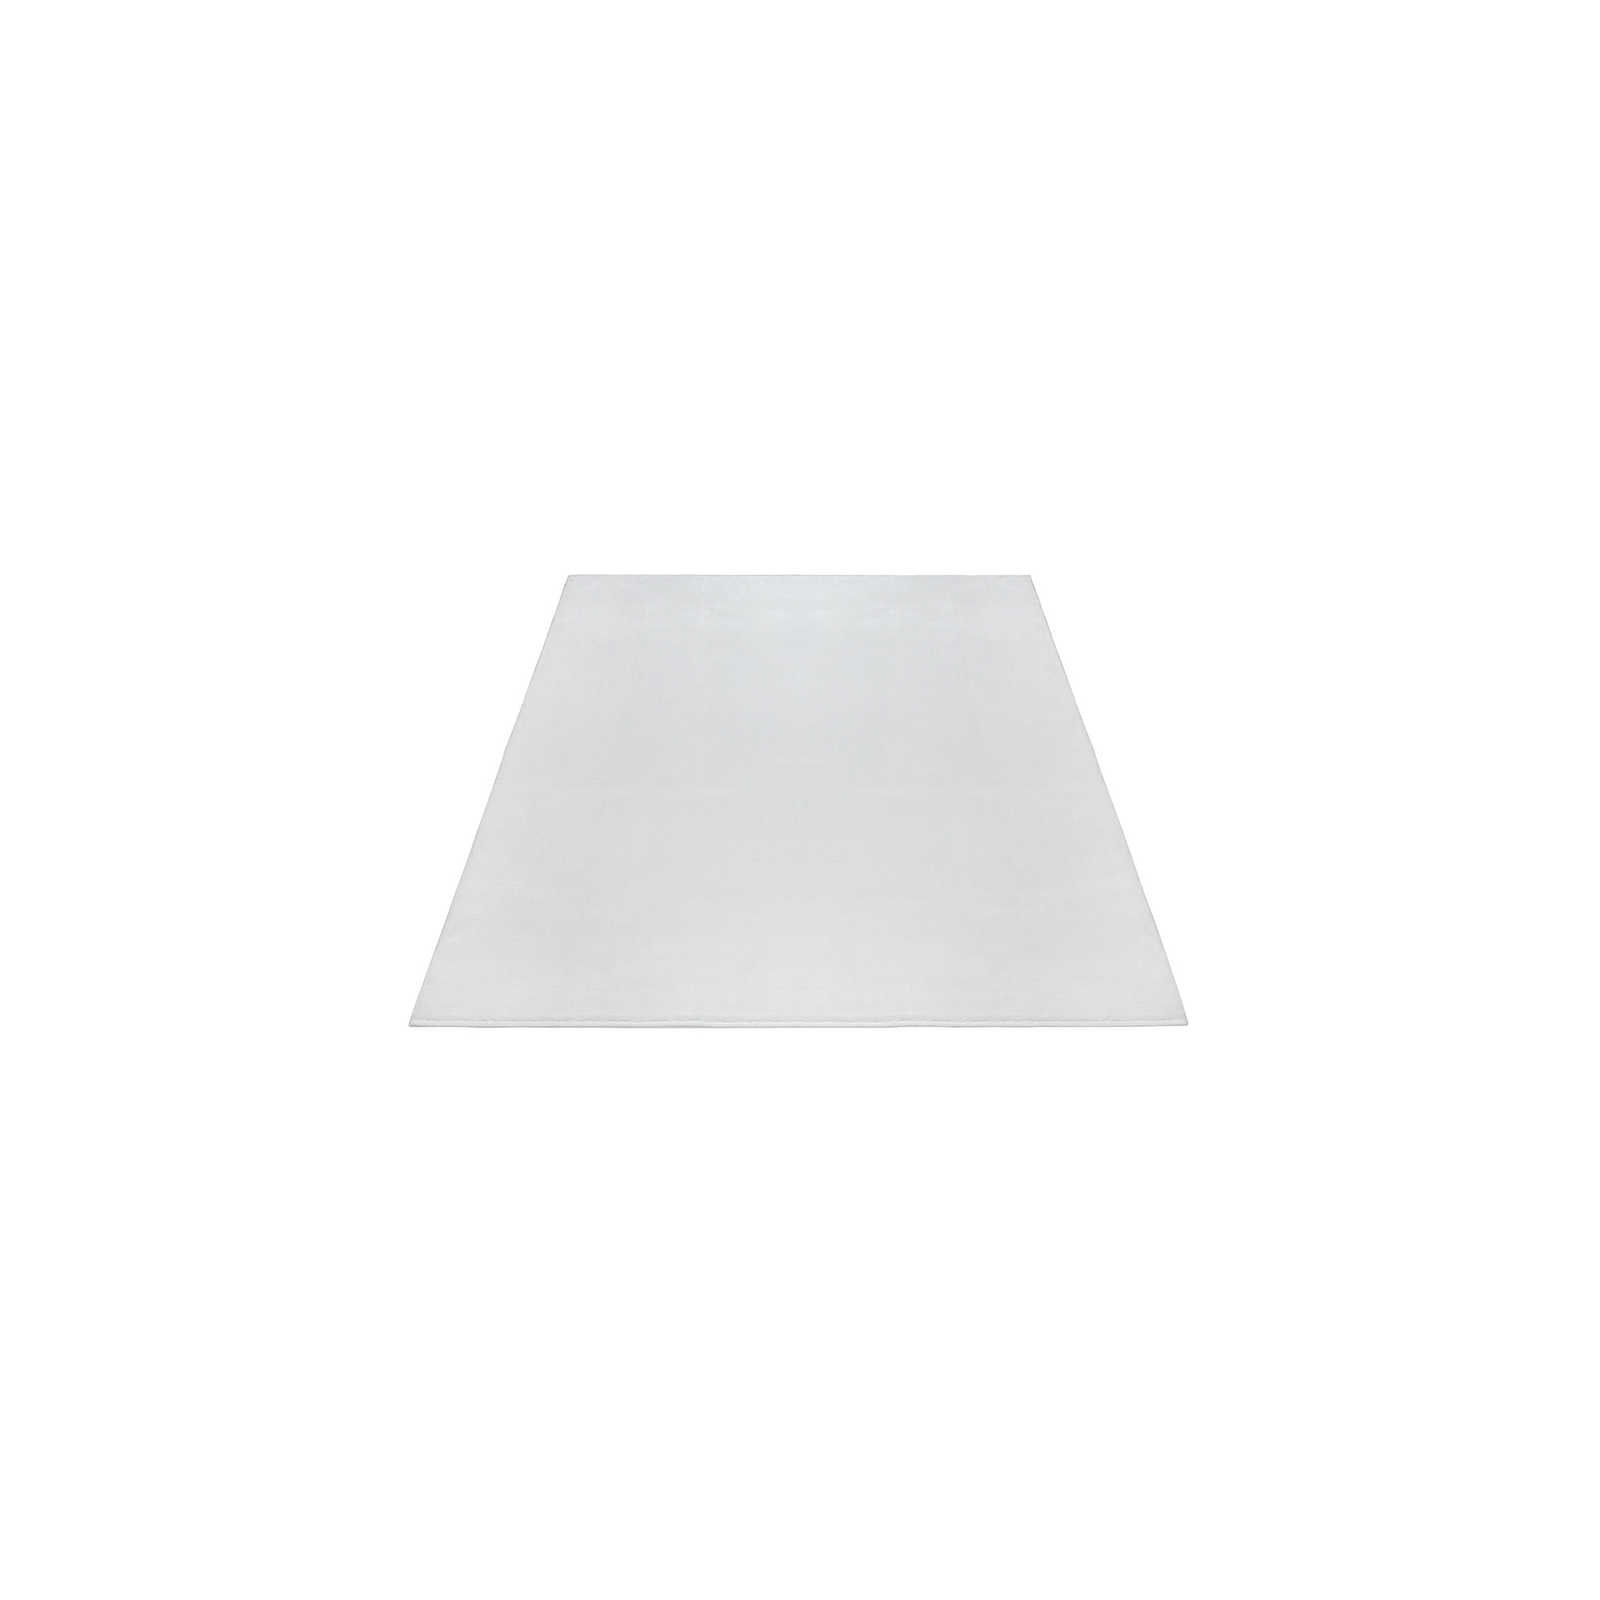 Flauschiger Hochflor Teppich in angenehmen Creme – 150 x 80 cm
